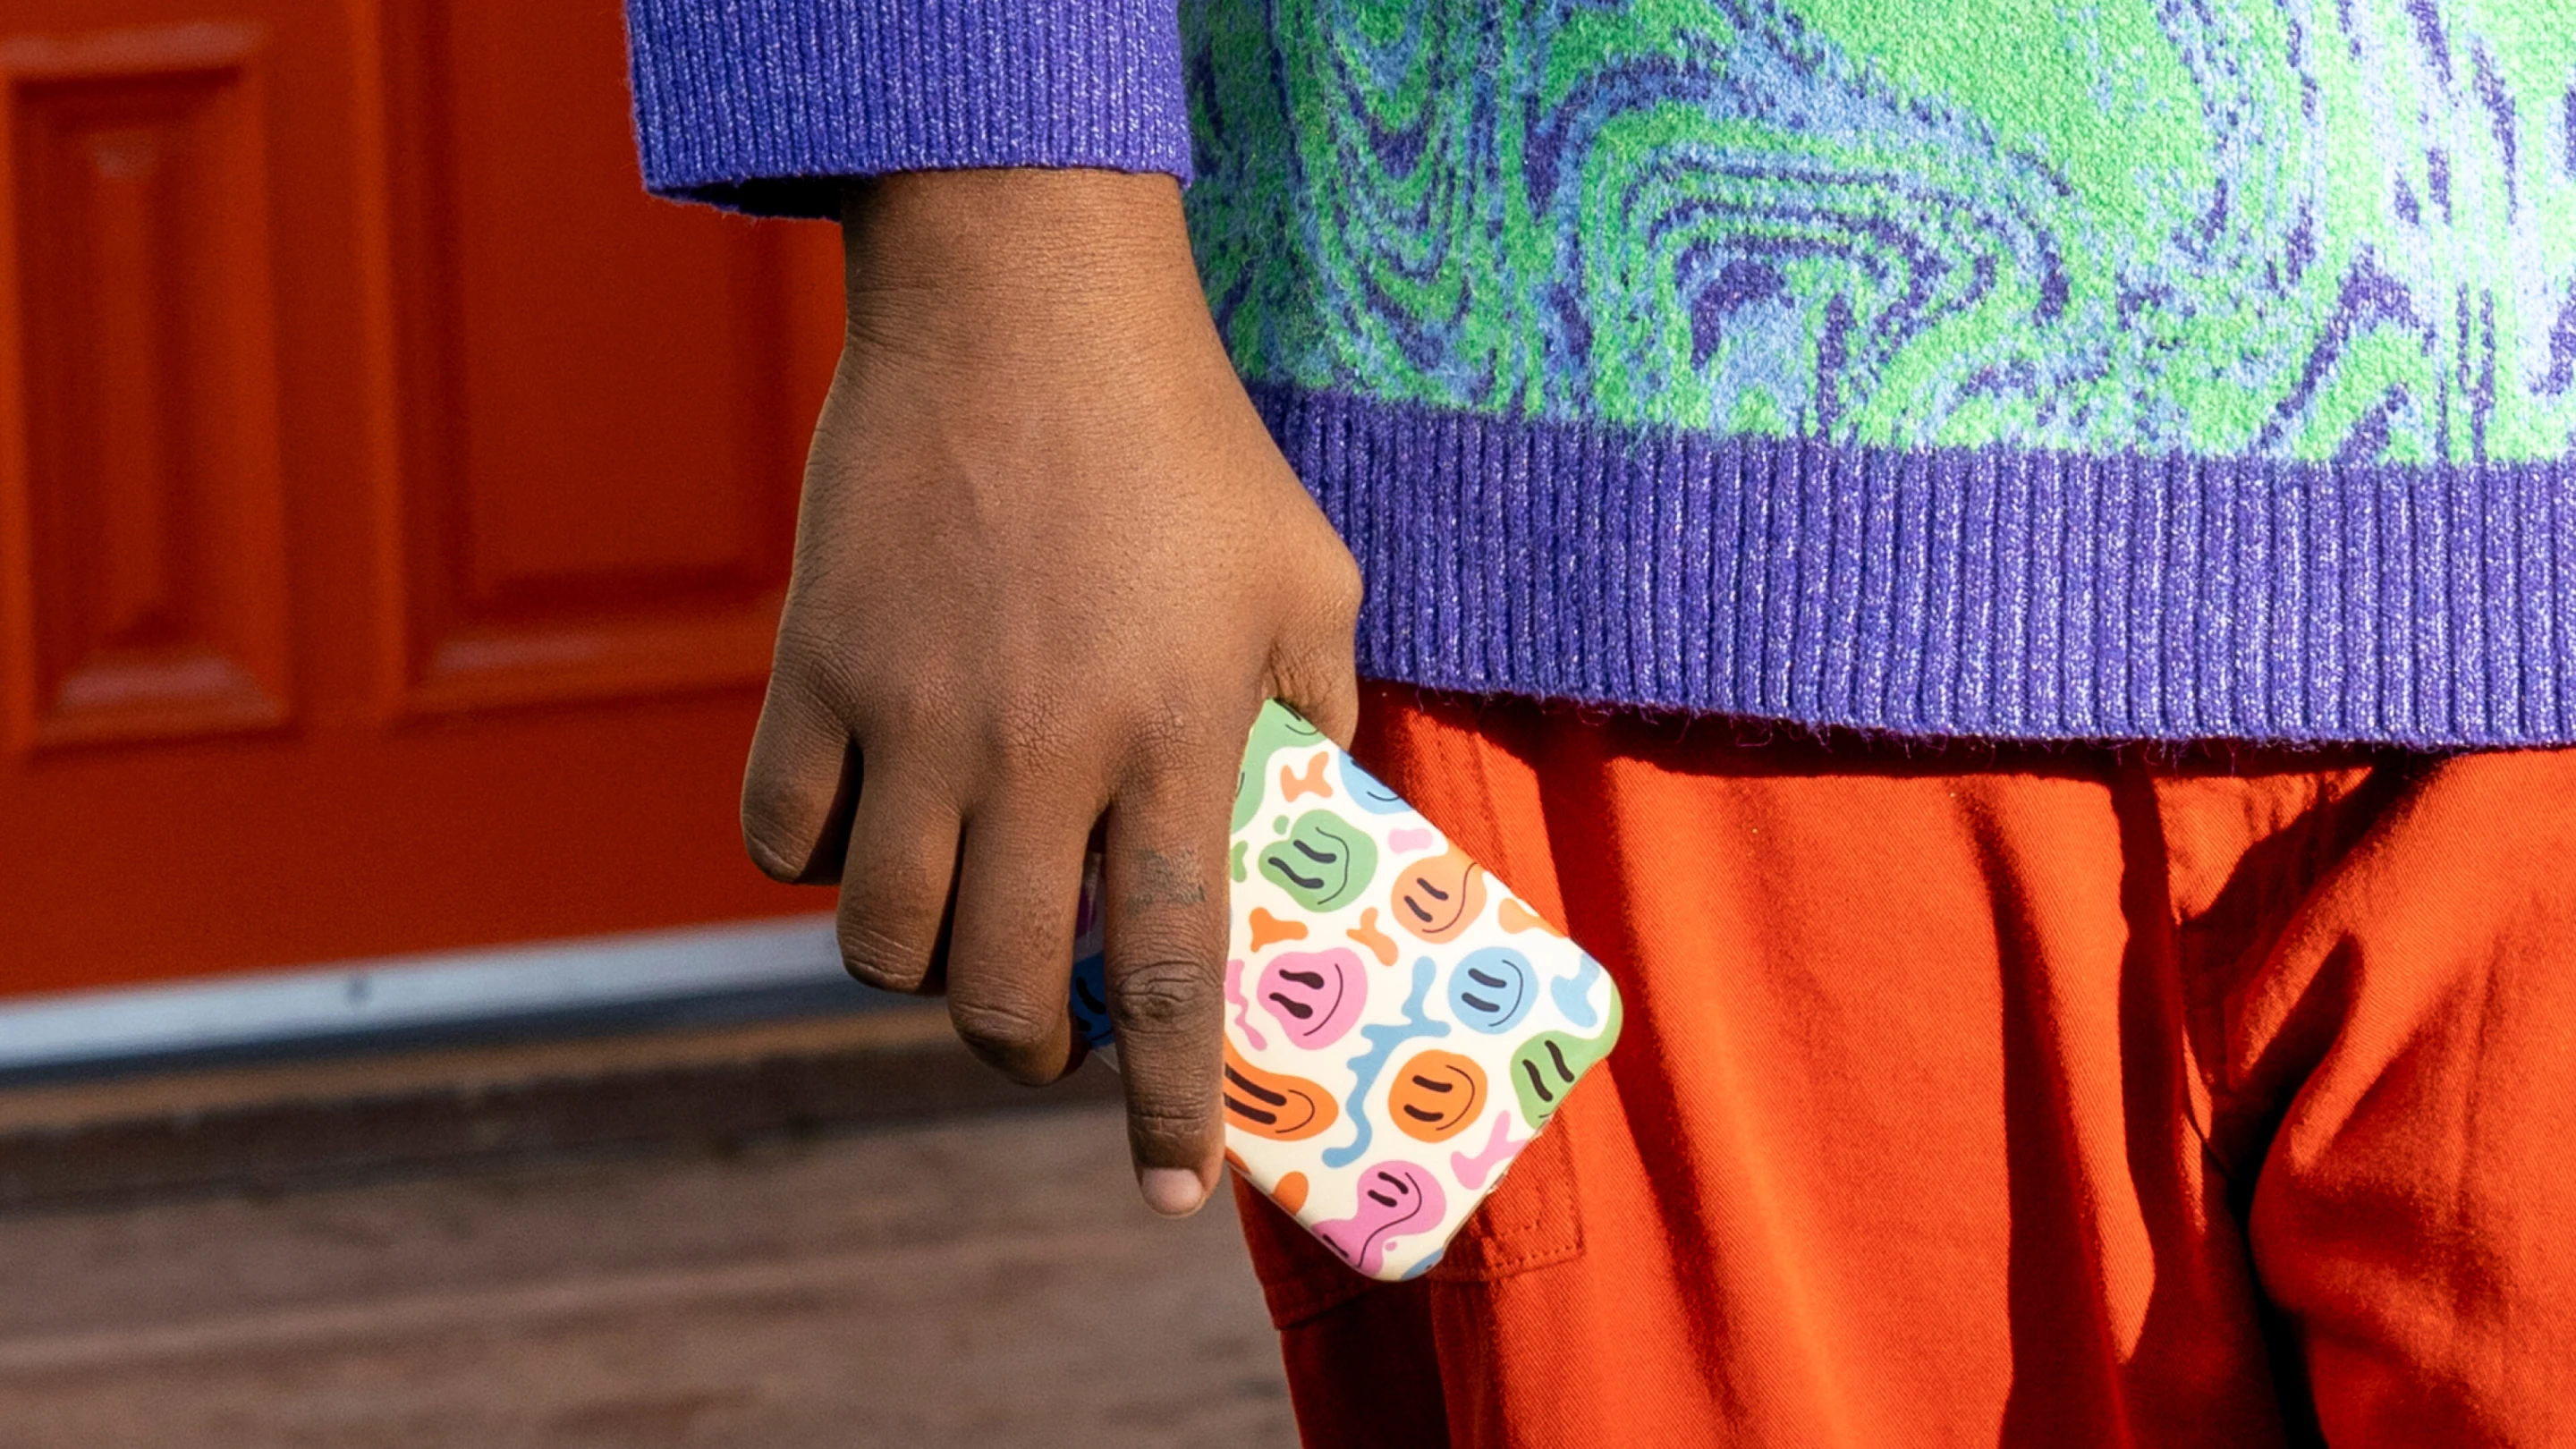 Eine Person in einem bunten Pullover hält ein Telefon in der Hand. Die Telefonhülle ist mit Regenbogen-Smileys bedeckt.